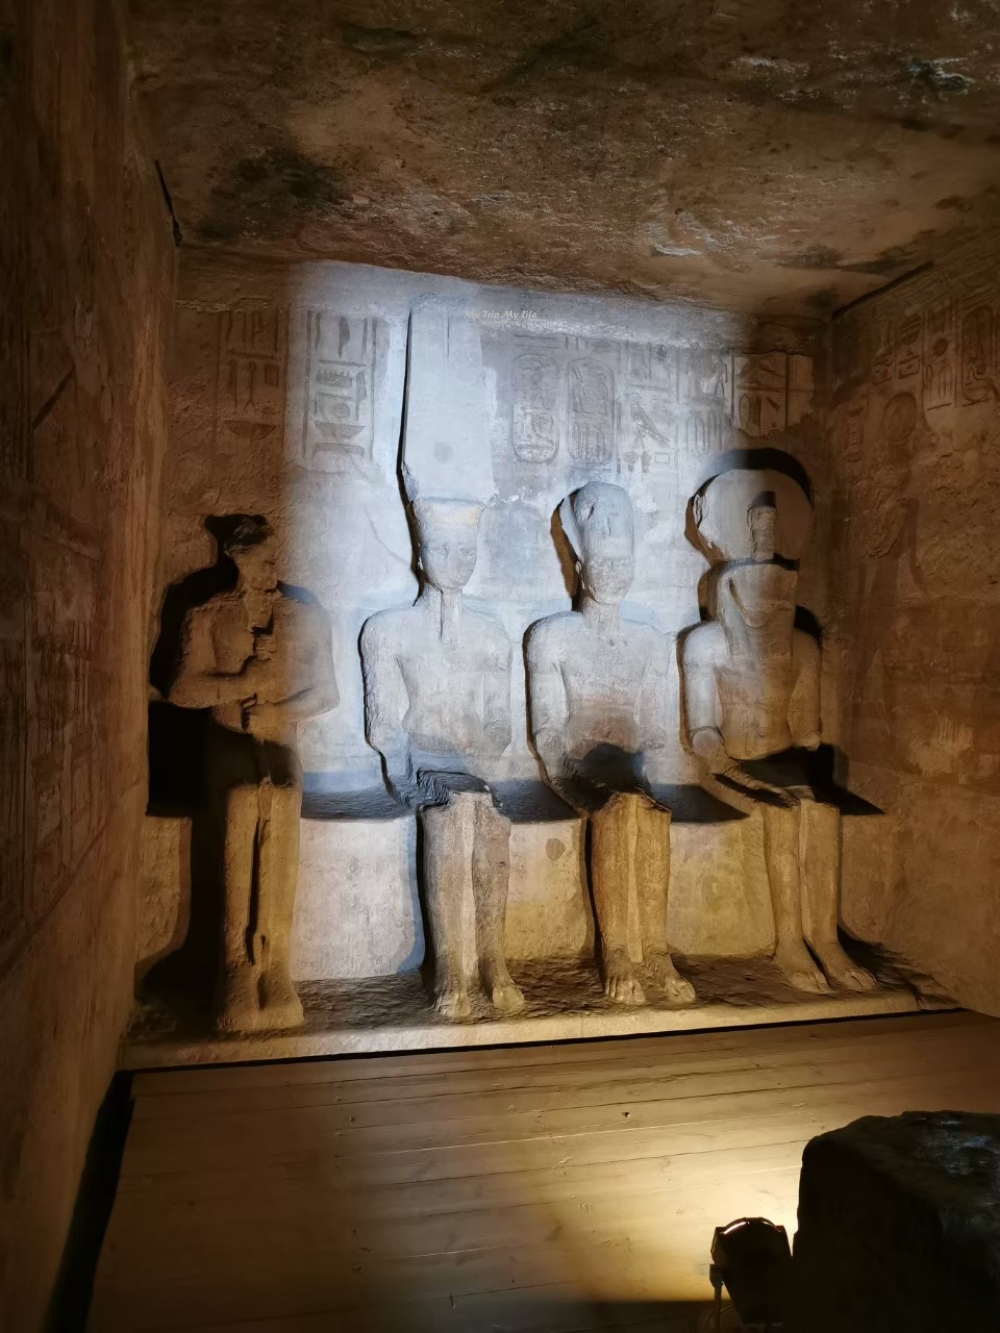 埃及景點｜努比亞遺址「阿布辛貝神殿」(含妮菲塔莉神殿) @MY TRIP ‧ MY LIFE